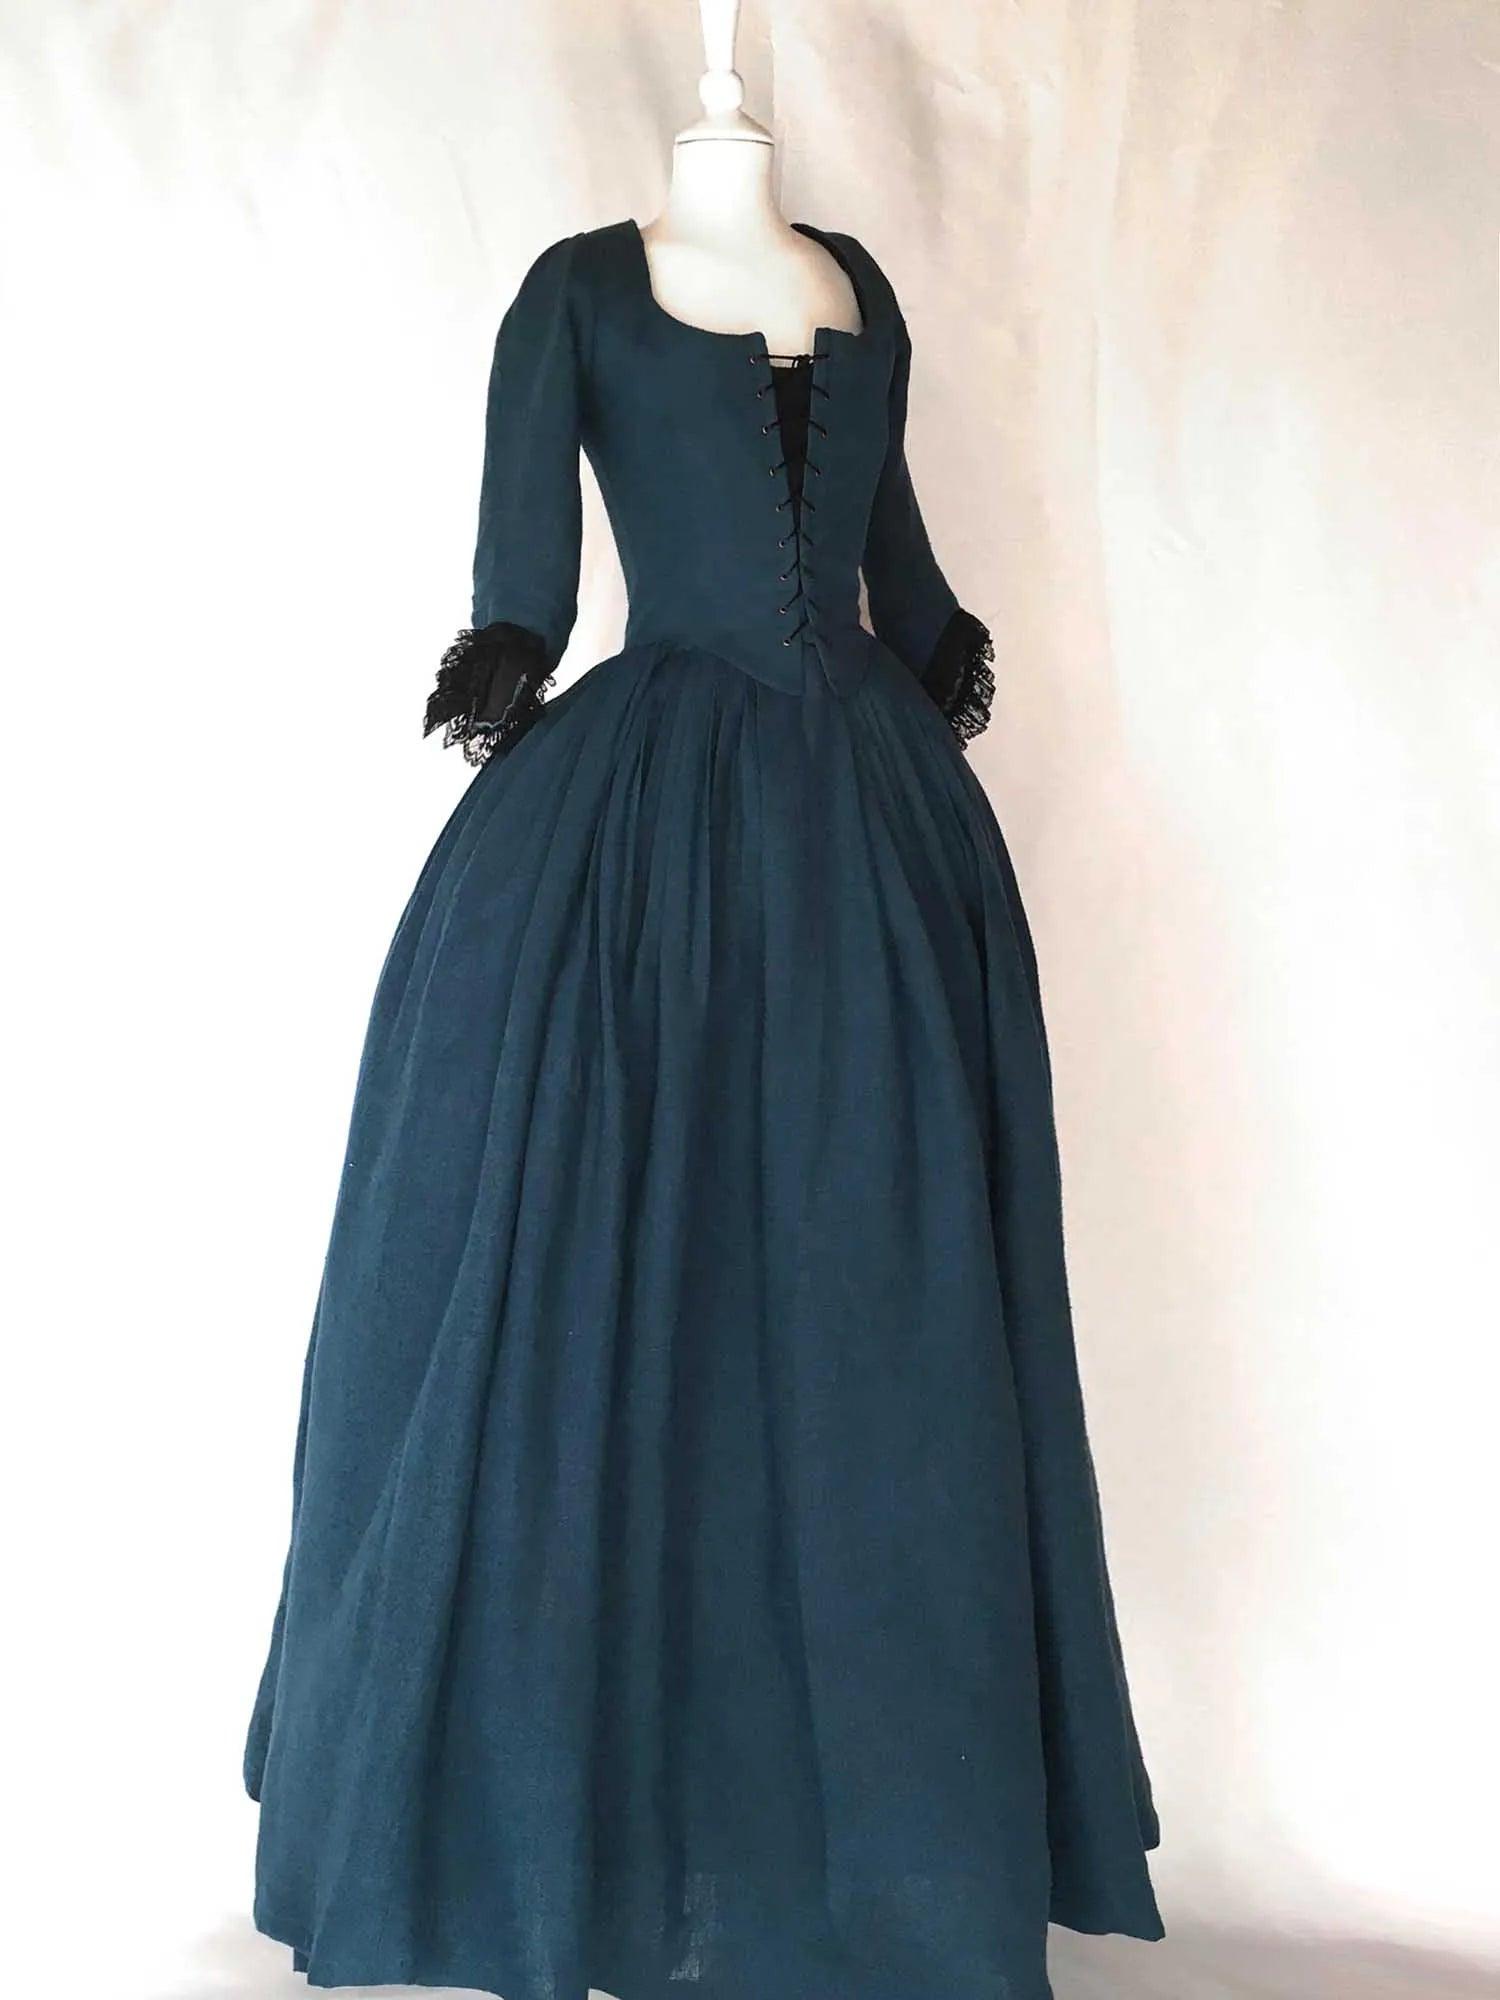 LOUISE, 18th-Century Dress In Ocean Blue Linen - Atelier Serraspina